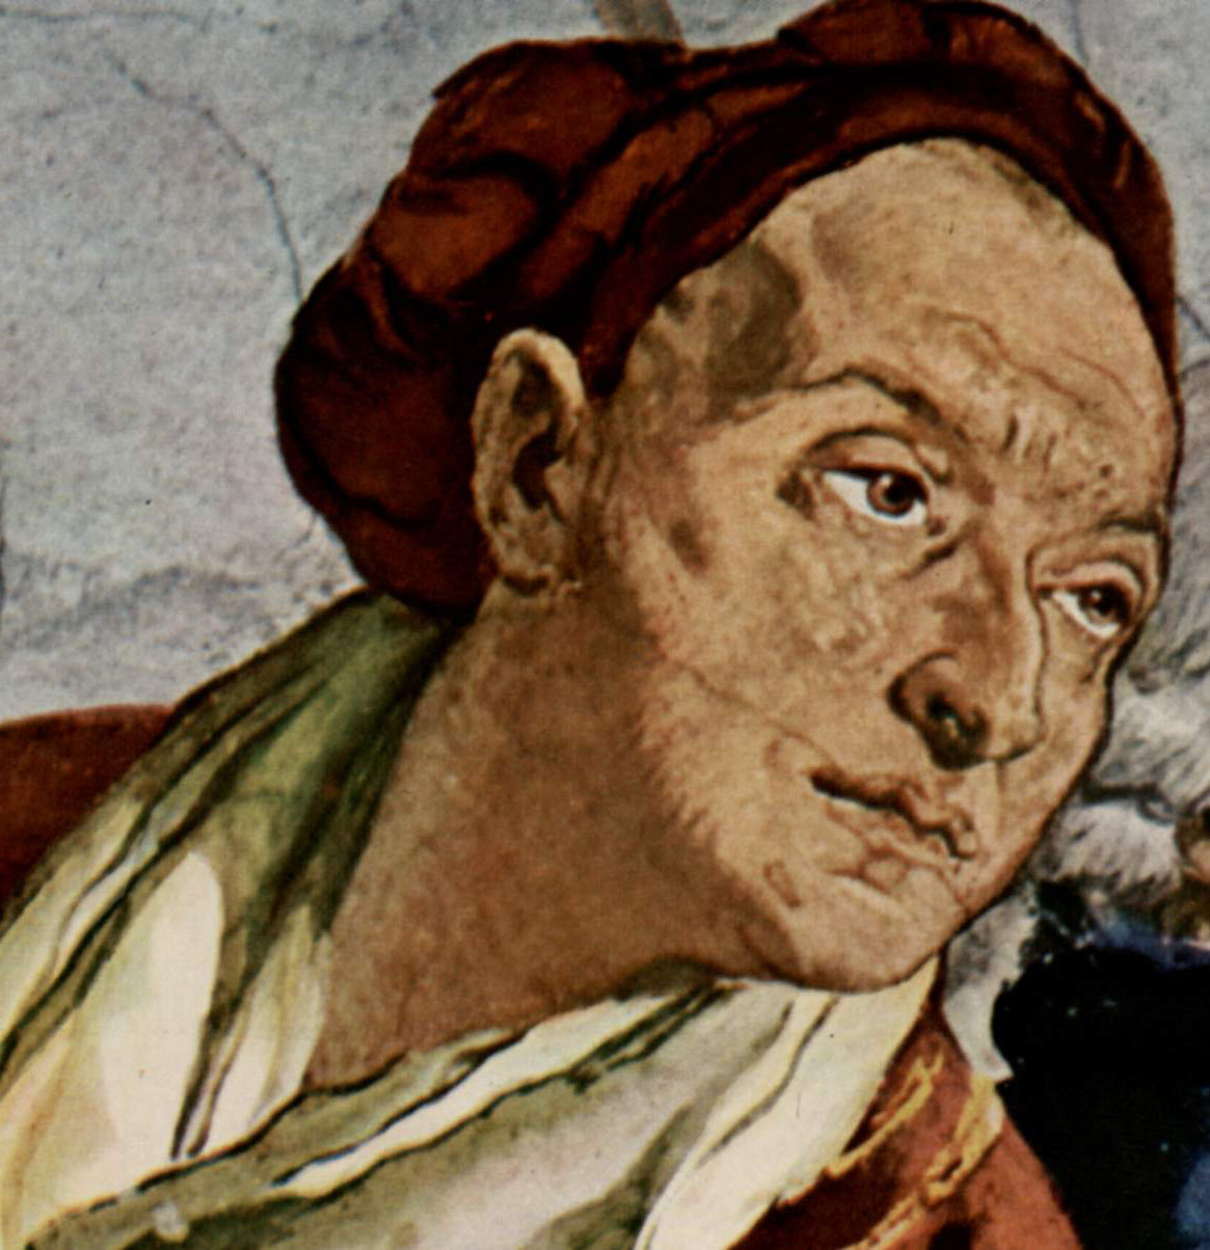 Giovanni Battista Tiepolo - March 5, 1696 - March 27, 1770